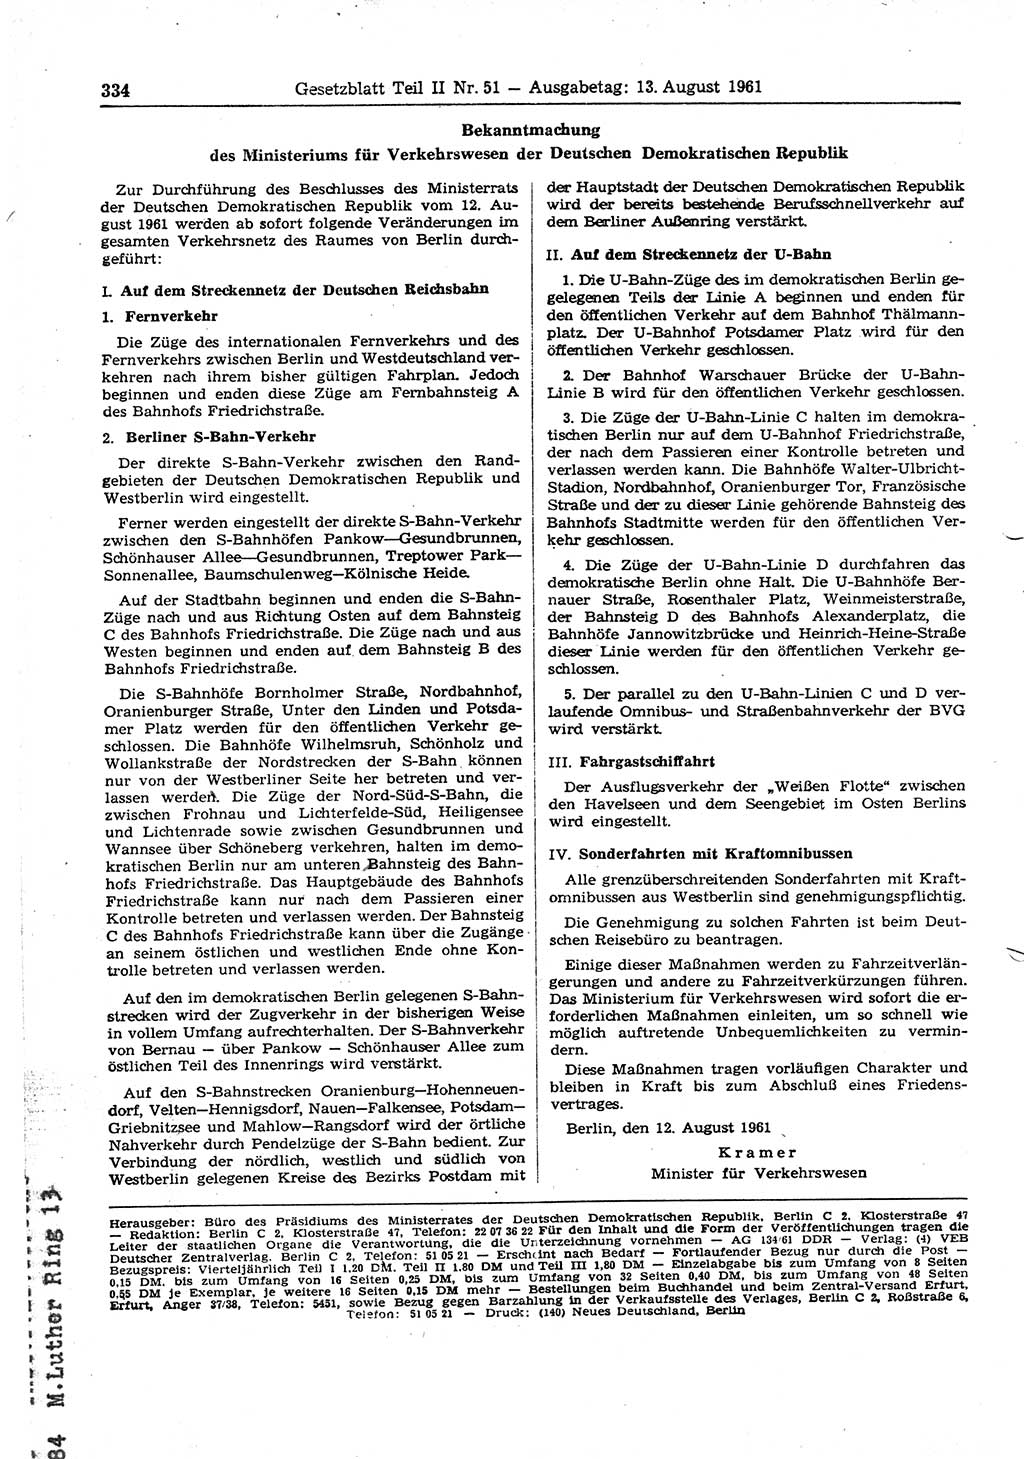 Gesetzblatt (GBl.) der Deutschen Demokratischen Republik (DDR) Teil ⅠⅠ 1961, Seite 334 (GBl. DDR ⅠⅠ 1961, S. 334)